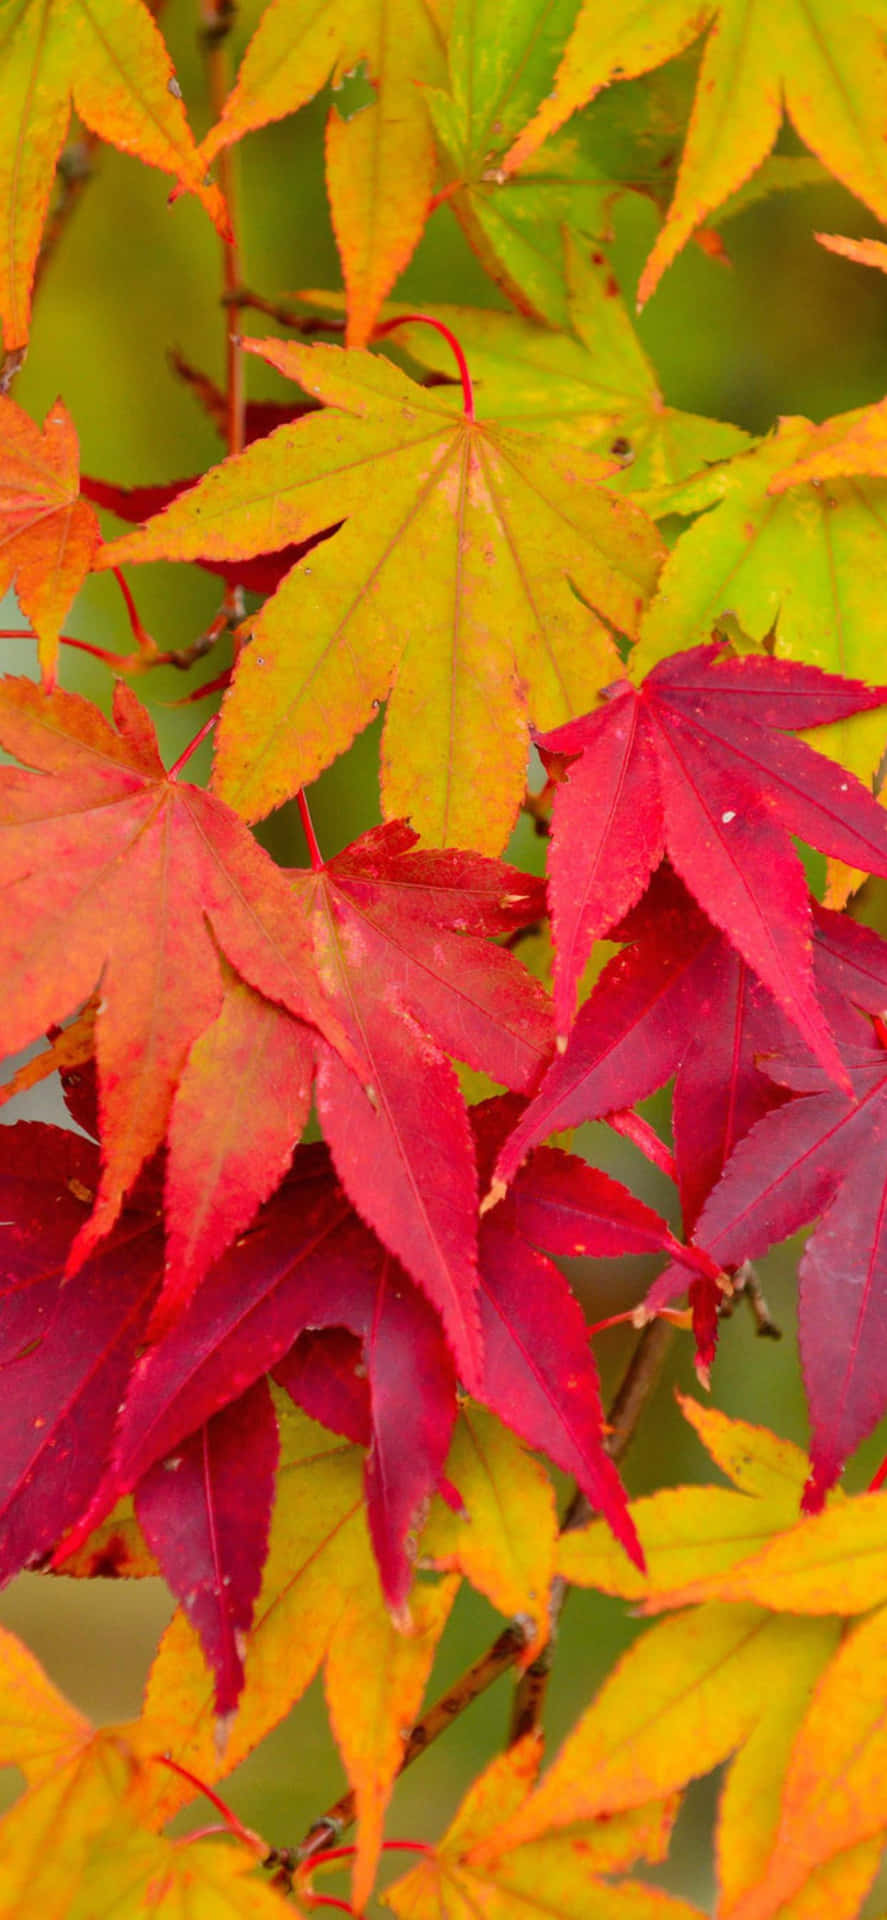 L'autunnoporta Una Bellissima Trasformazione Di Foglie E Colori Nella Natura.